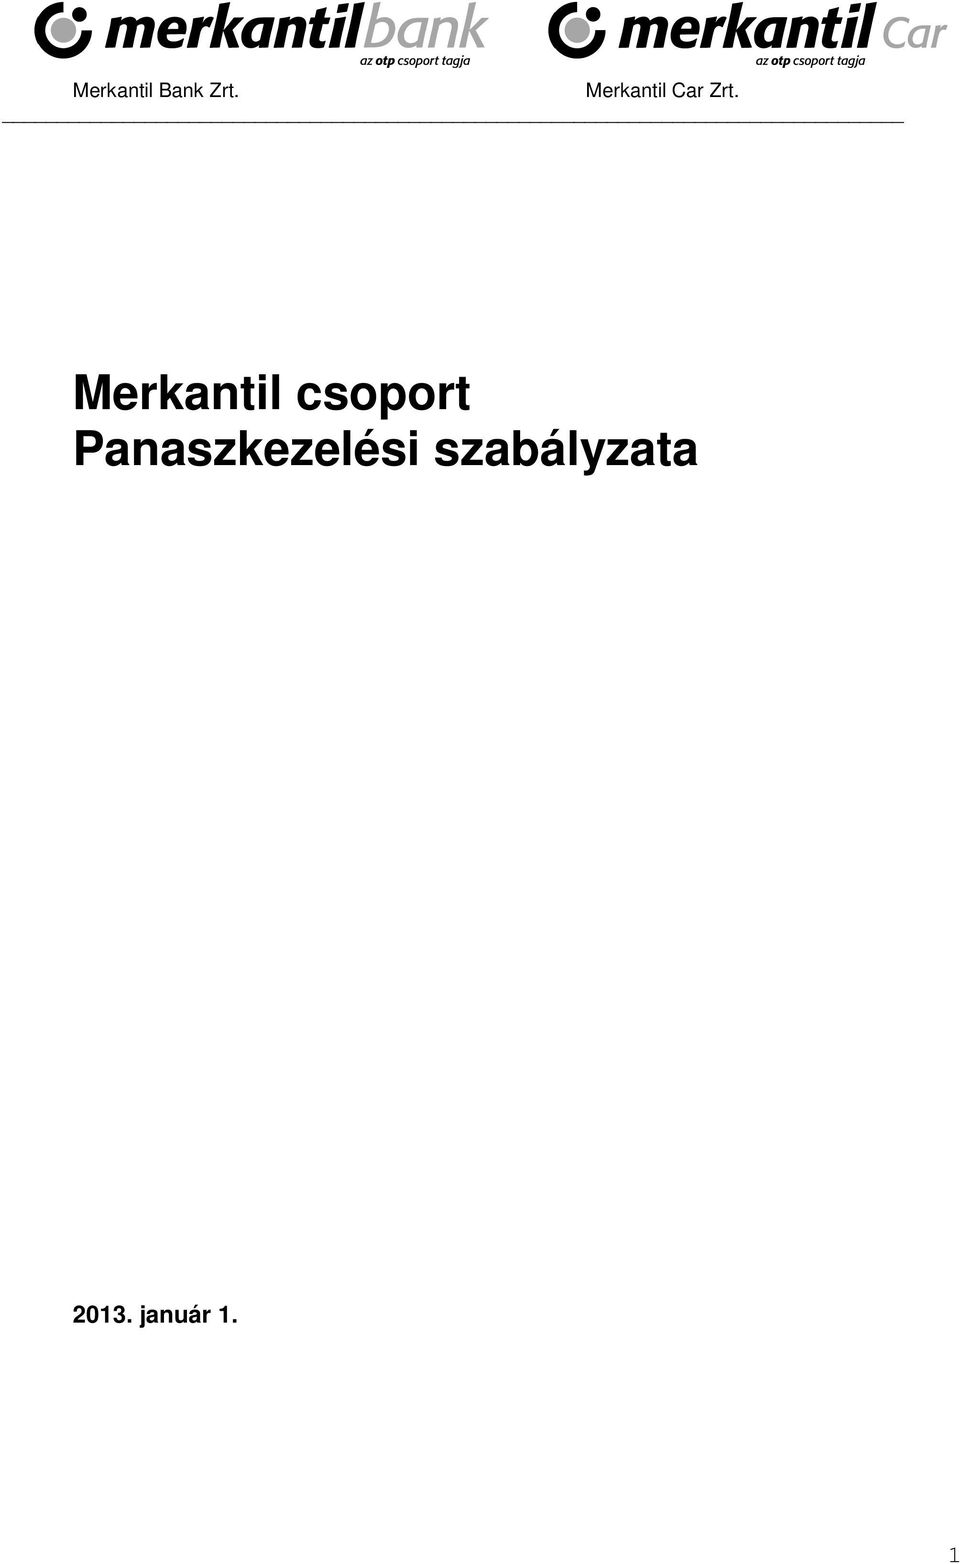 Merkantil csoport Panaszkezelési szabályzata - PDF Ingyenes letöltés